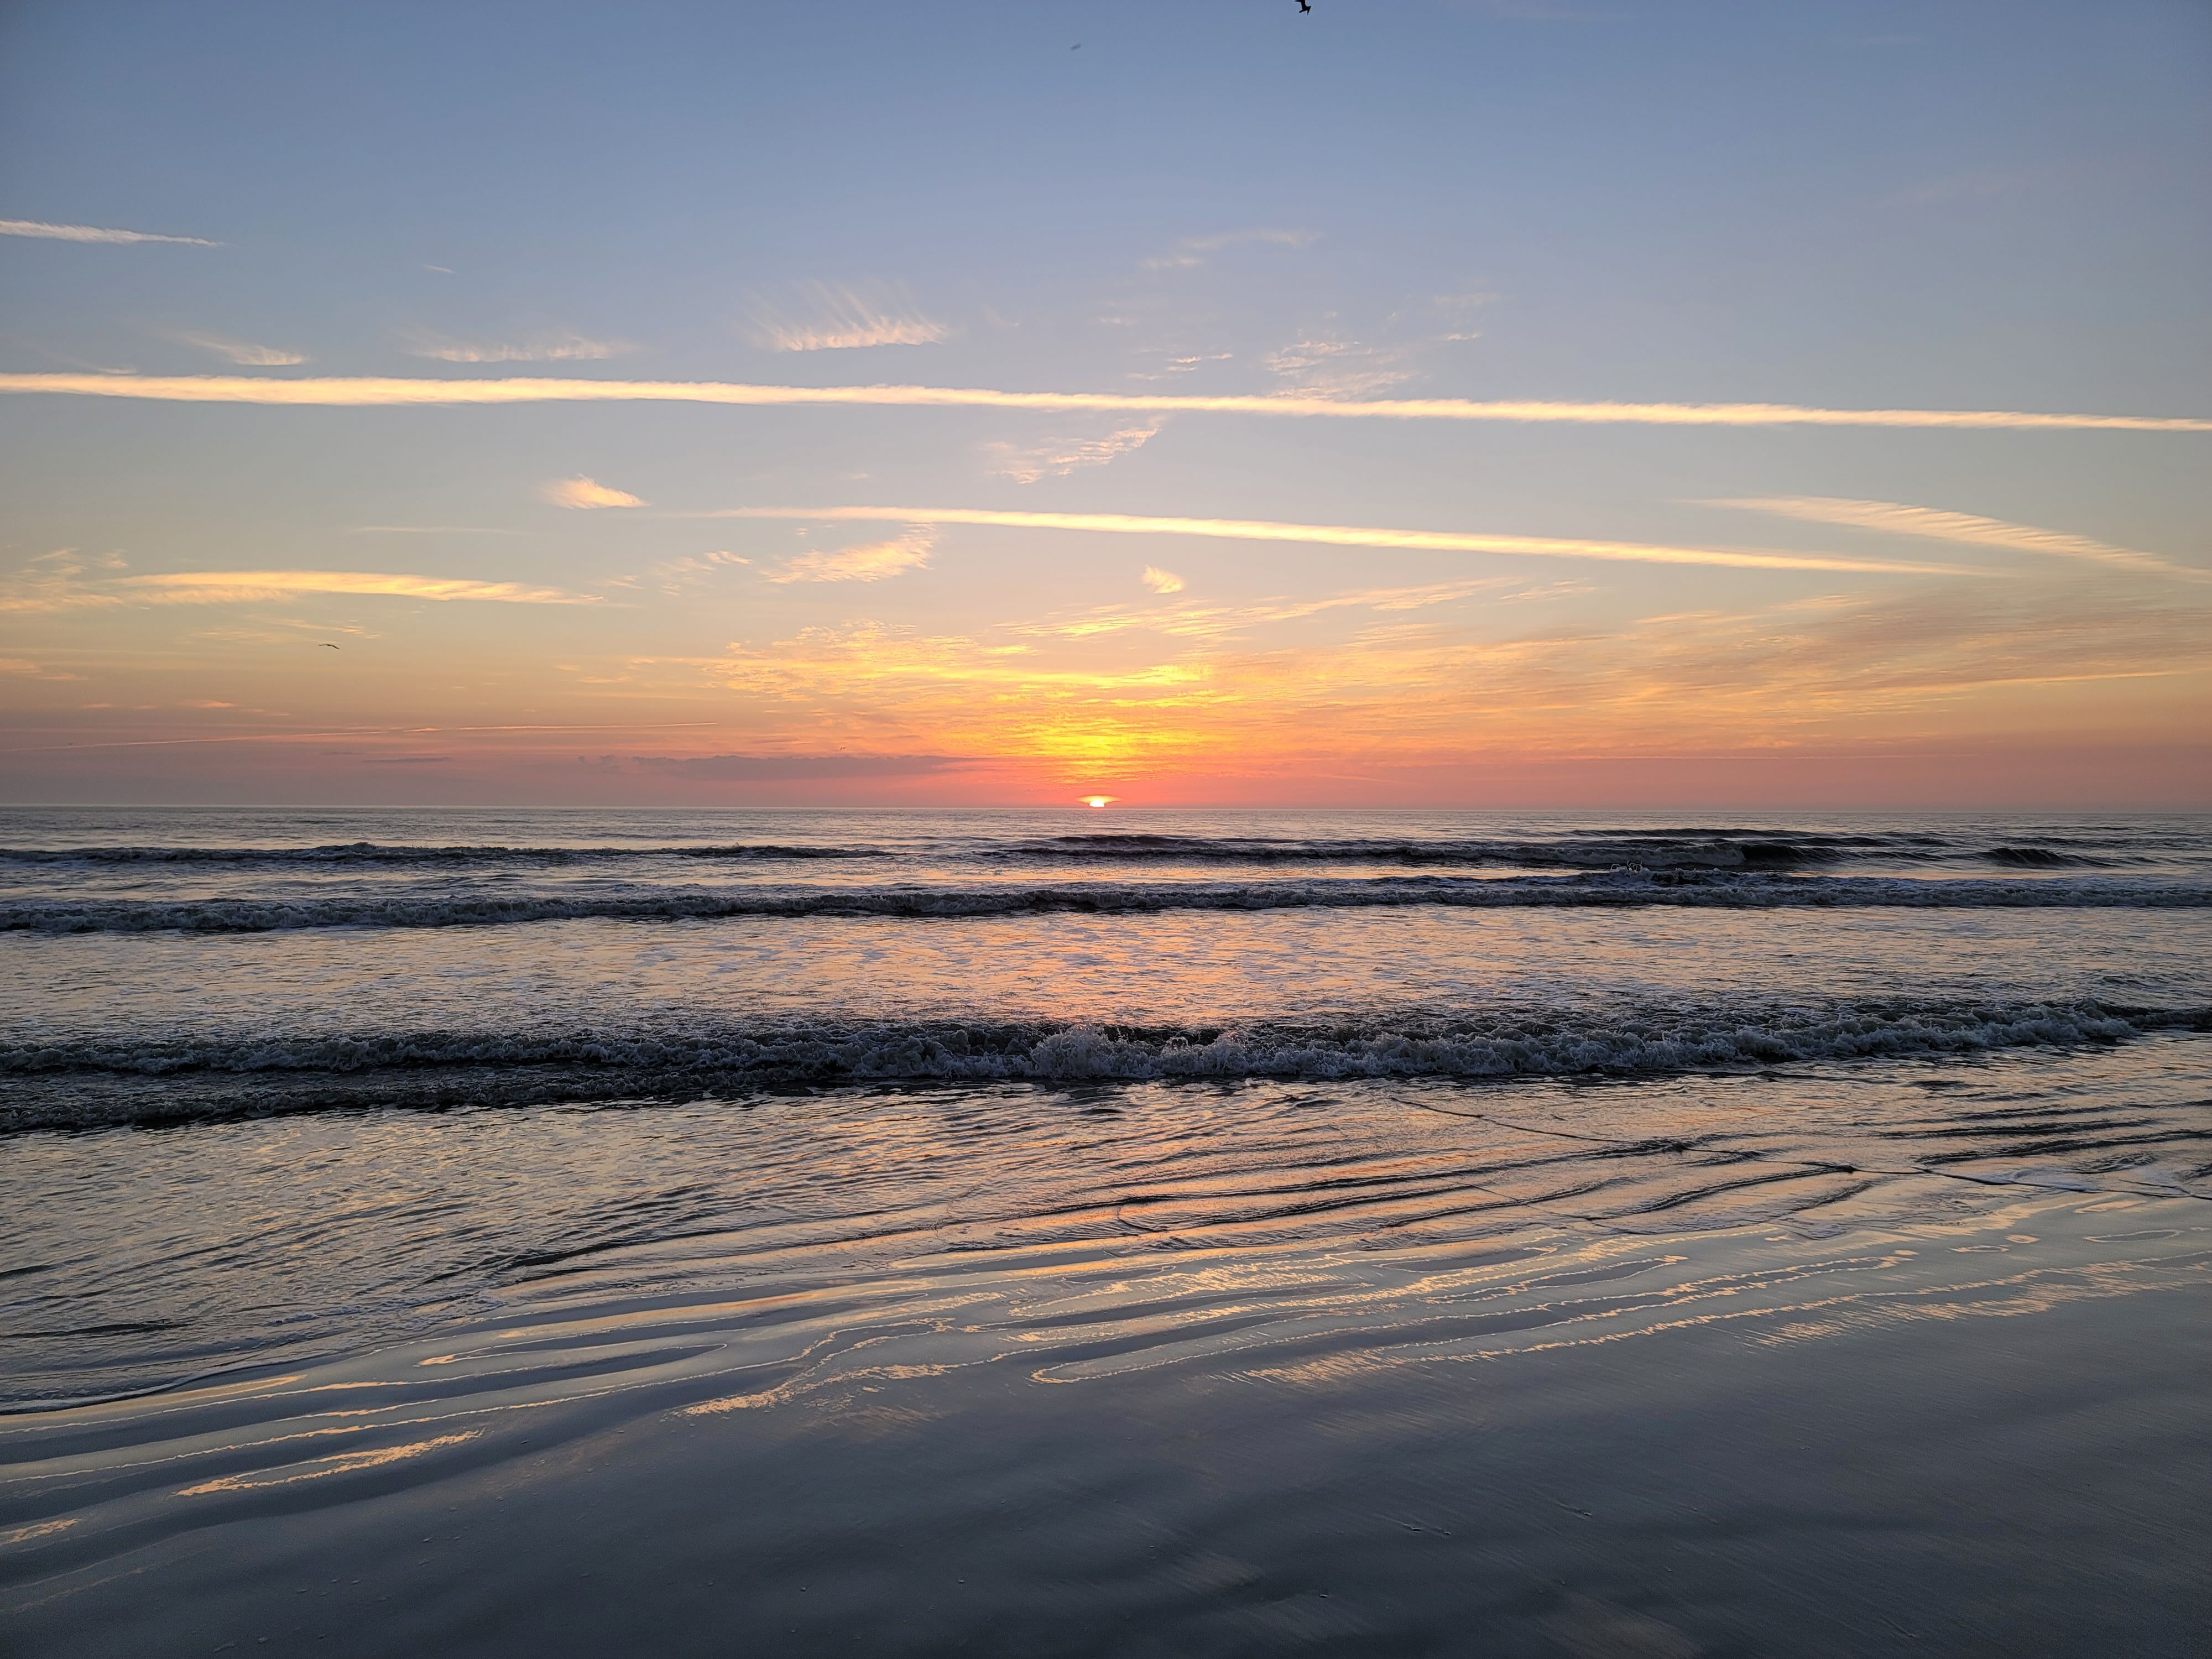 Beach sunrise at Daytona